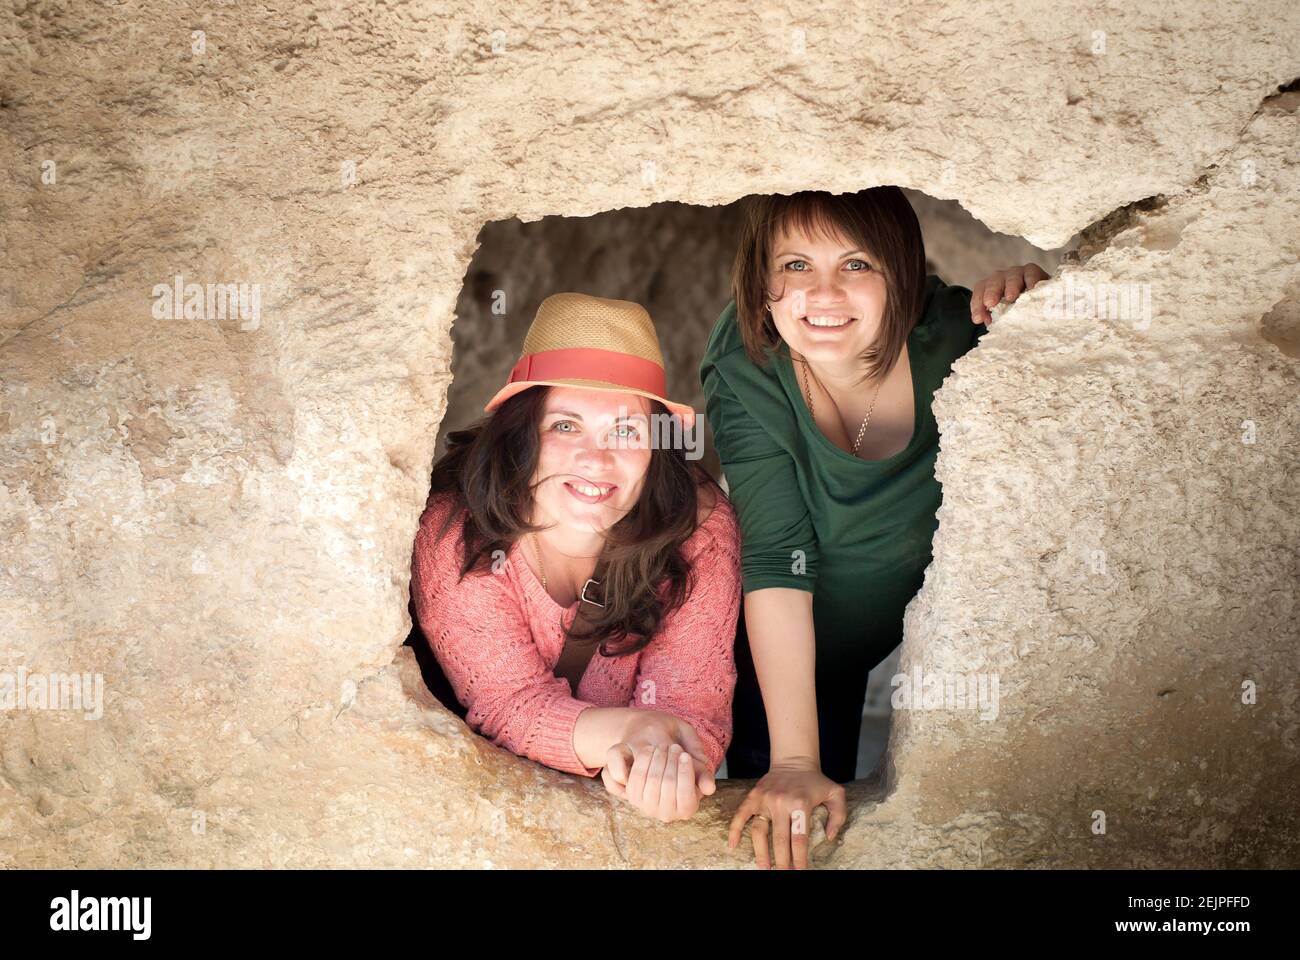 Zwei lächelnde Mädchen in einer Höhle Stockfoto